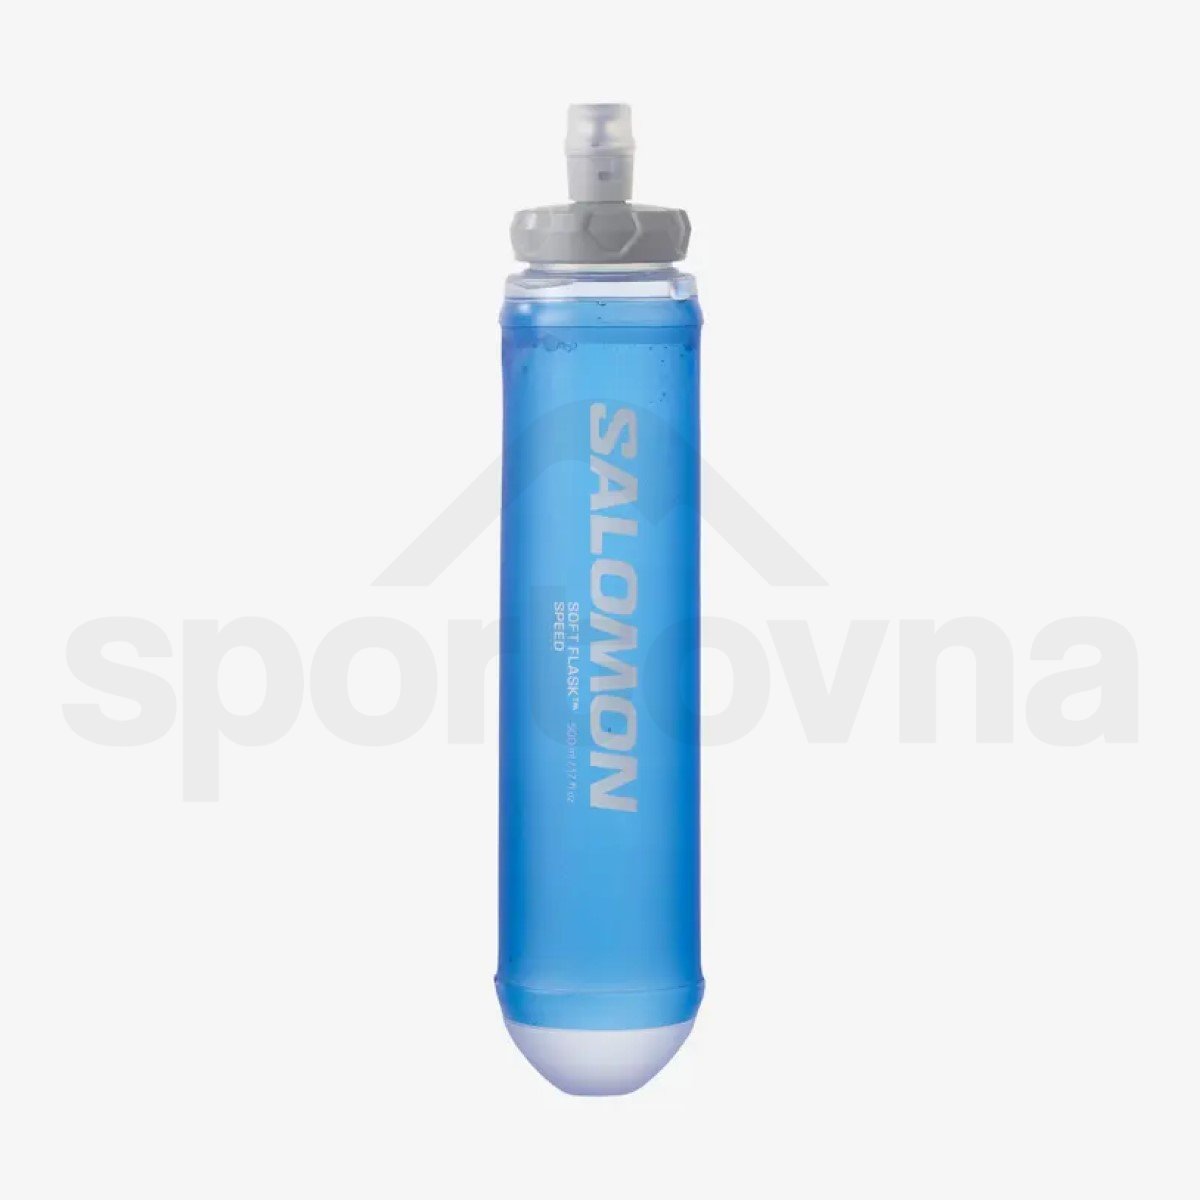 Batoh Salomon SENSE PRO 10 with flasks - černá